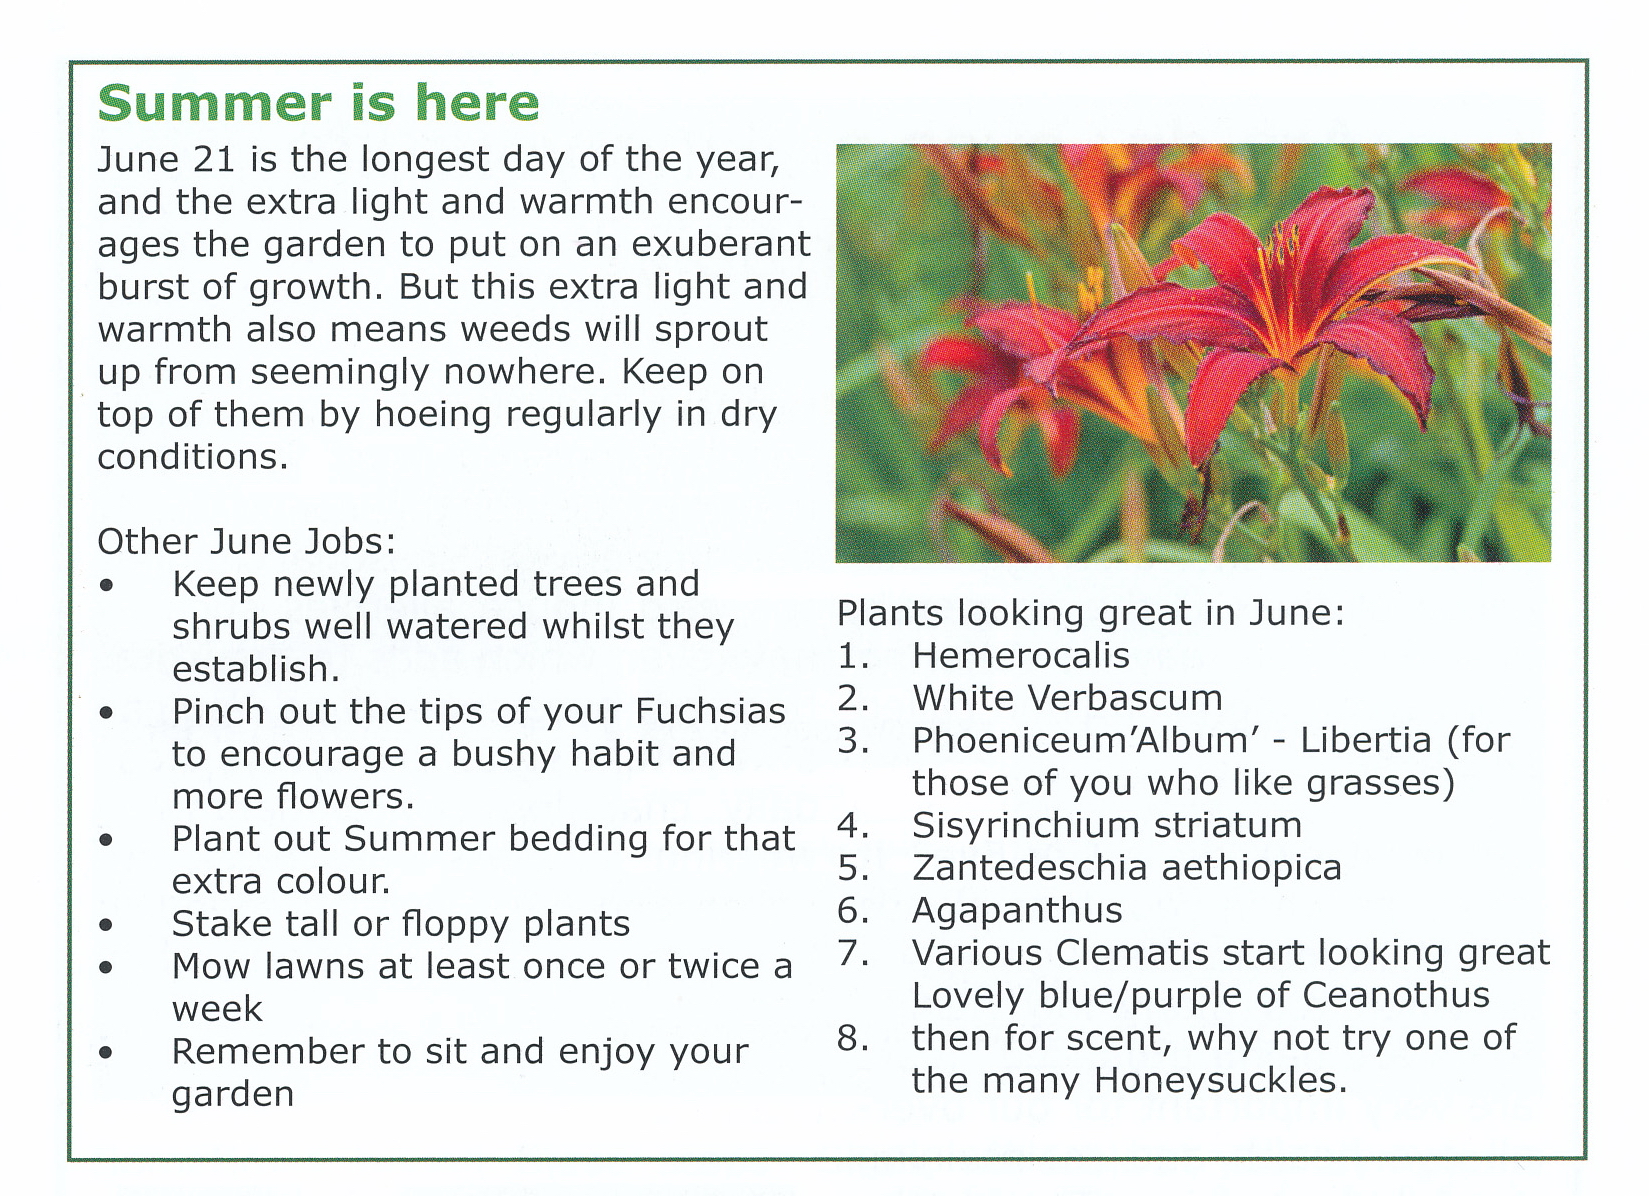 Ten best plants for June